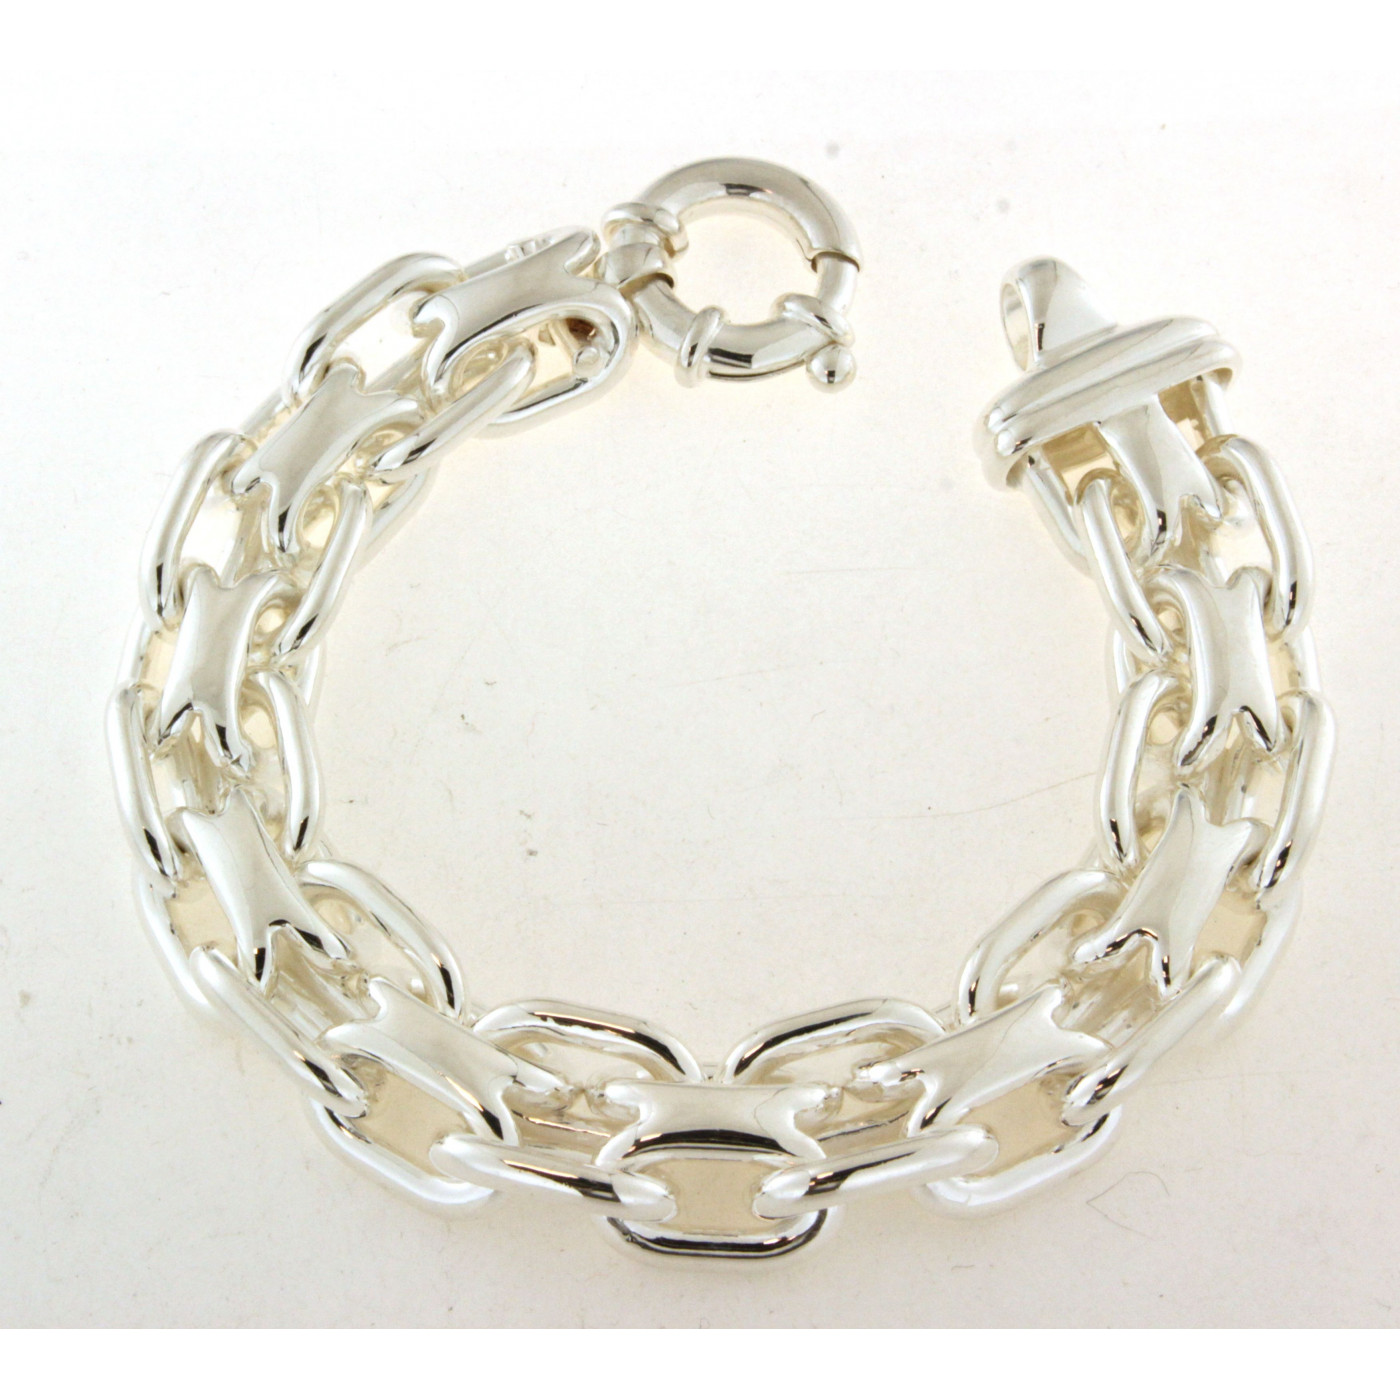 Bracelet Argent Femme, Achat bijoux argent